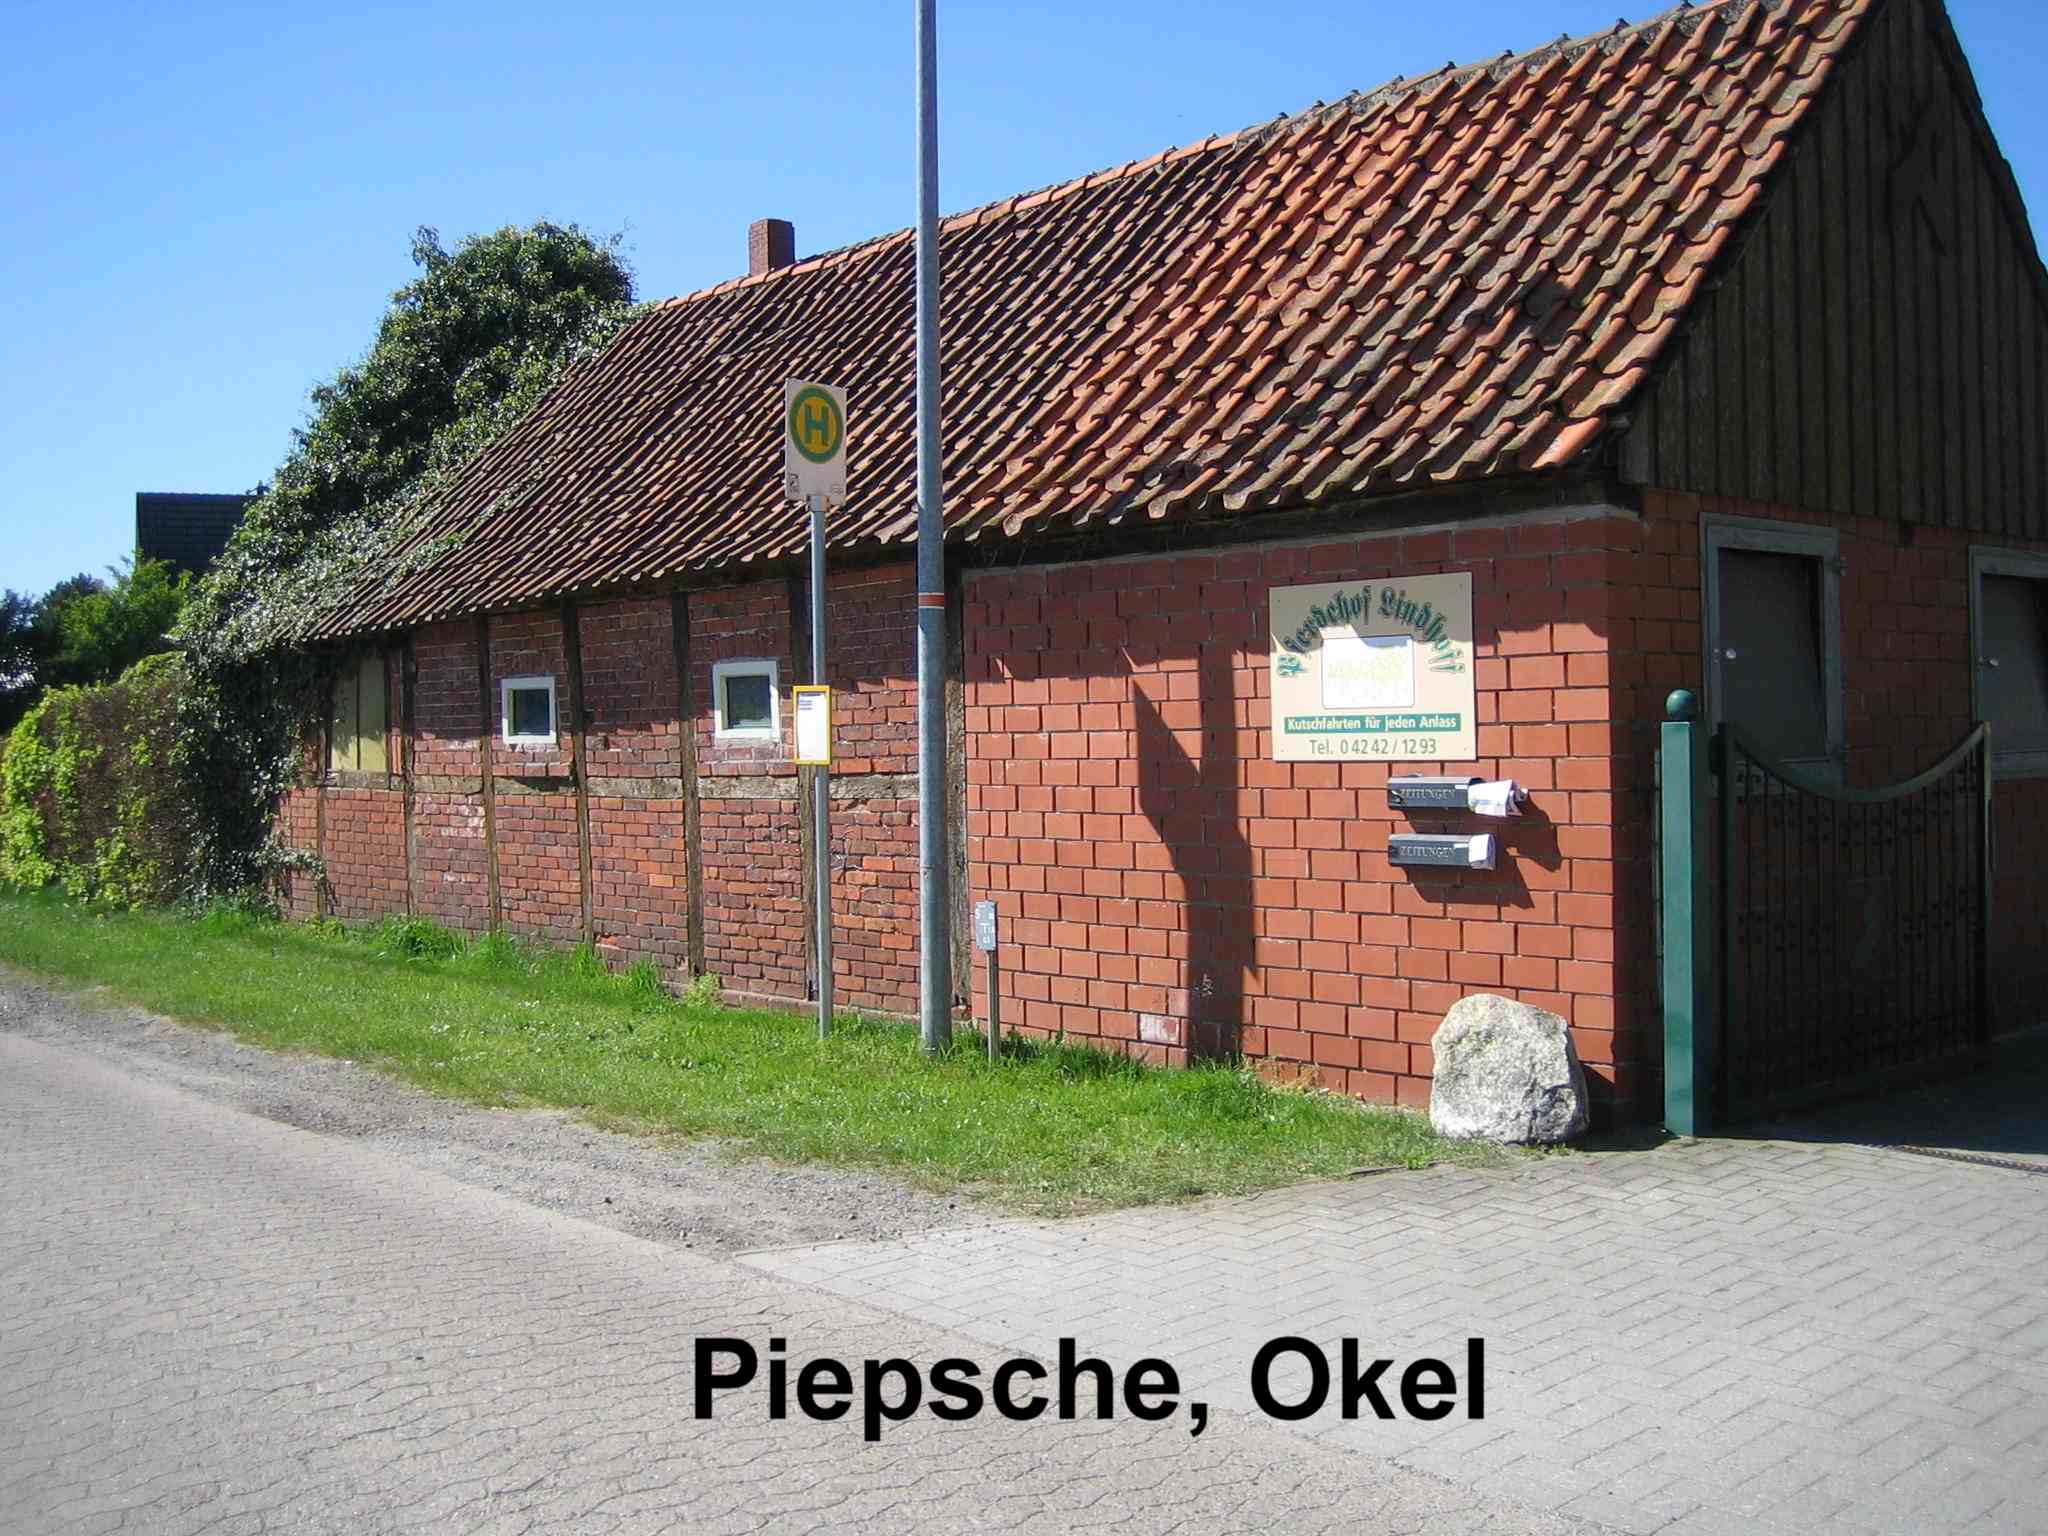 186-18_Piepsche_Okel.jpg